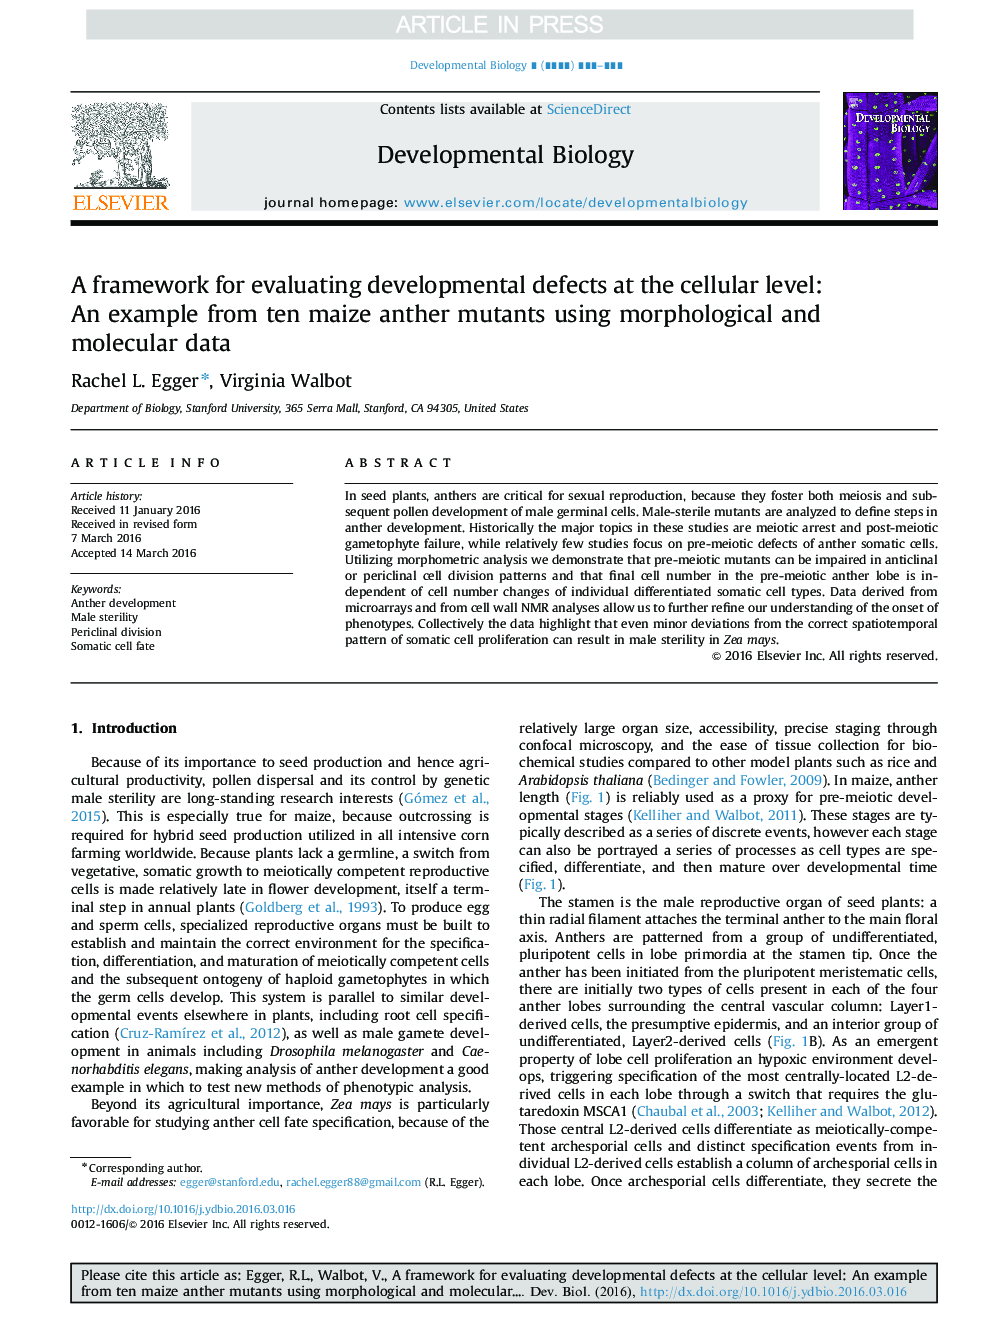 یک چارچوب برای ارزیابی نقص های رشدی در سطح سلولی: مثال از ده موتاسیون سویه ذرت با استفاده از داده های مورفولوژیکی و مولکولی 